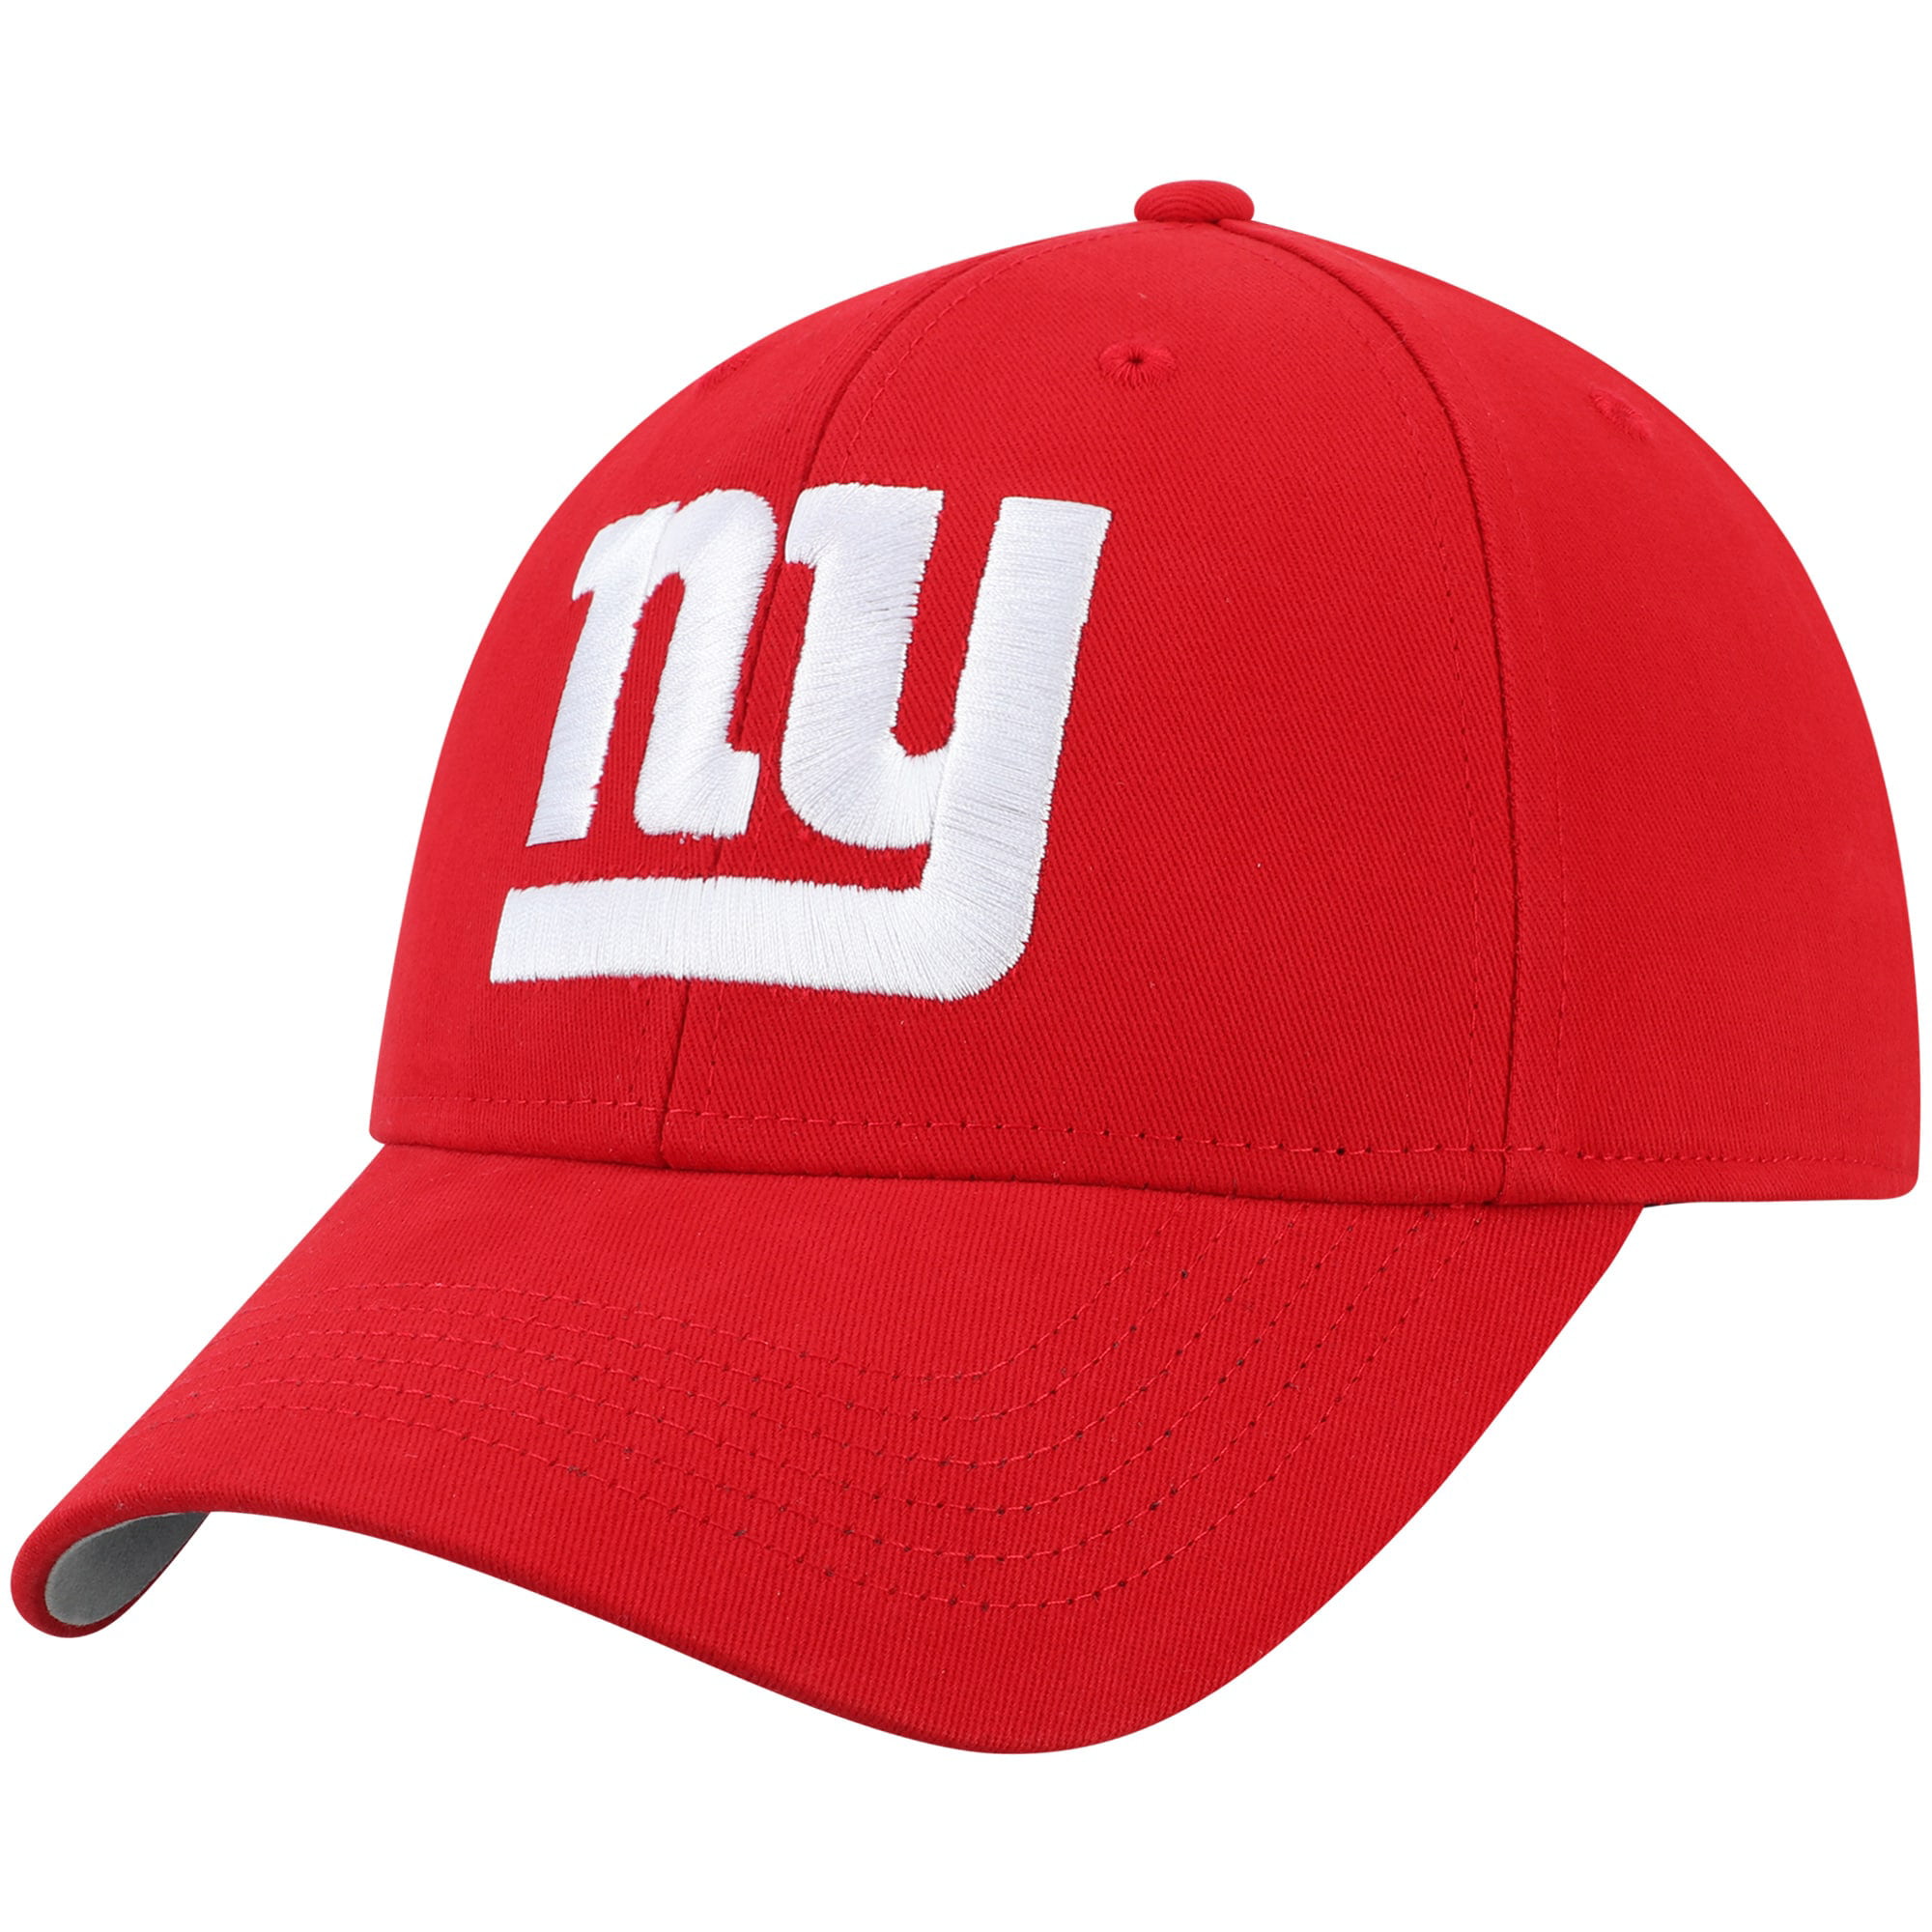 ماركة بربري ملابس Men's Red New York Giants Basic Alternate Adjustable Hat - OSFA ماركة بربري ملابس